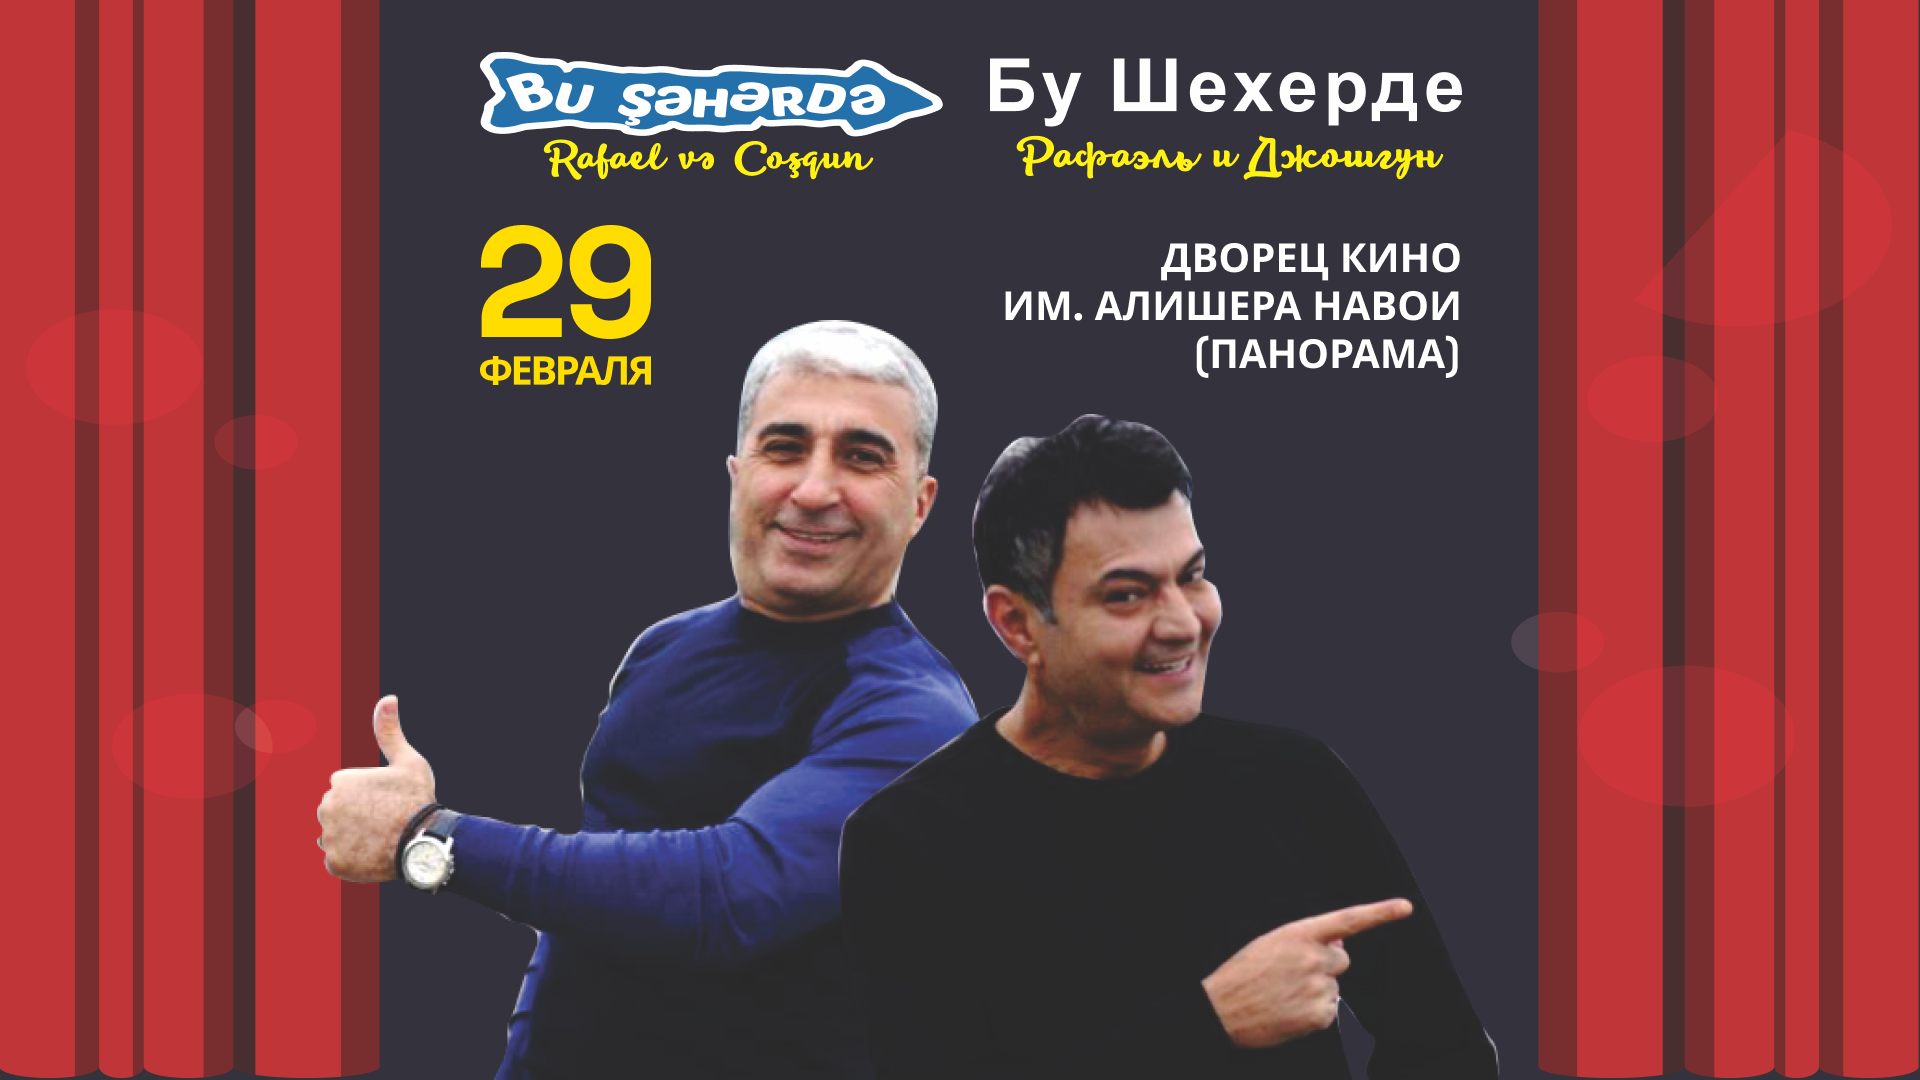 Юмористический коллектив «Бу Шехерде» выступит с новой концертной программой в Ташкенте